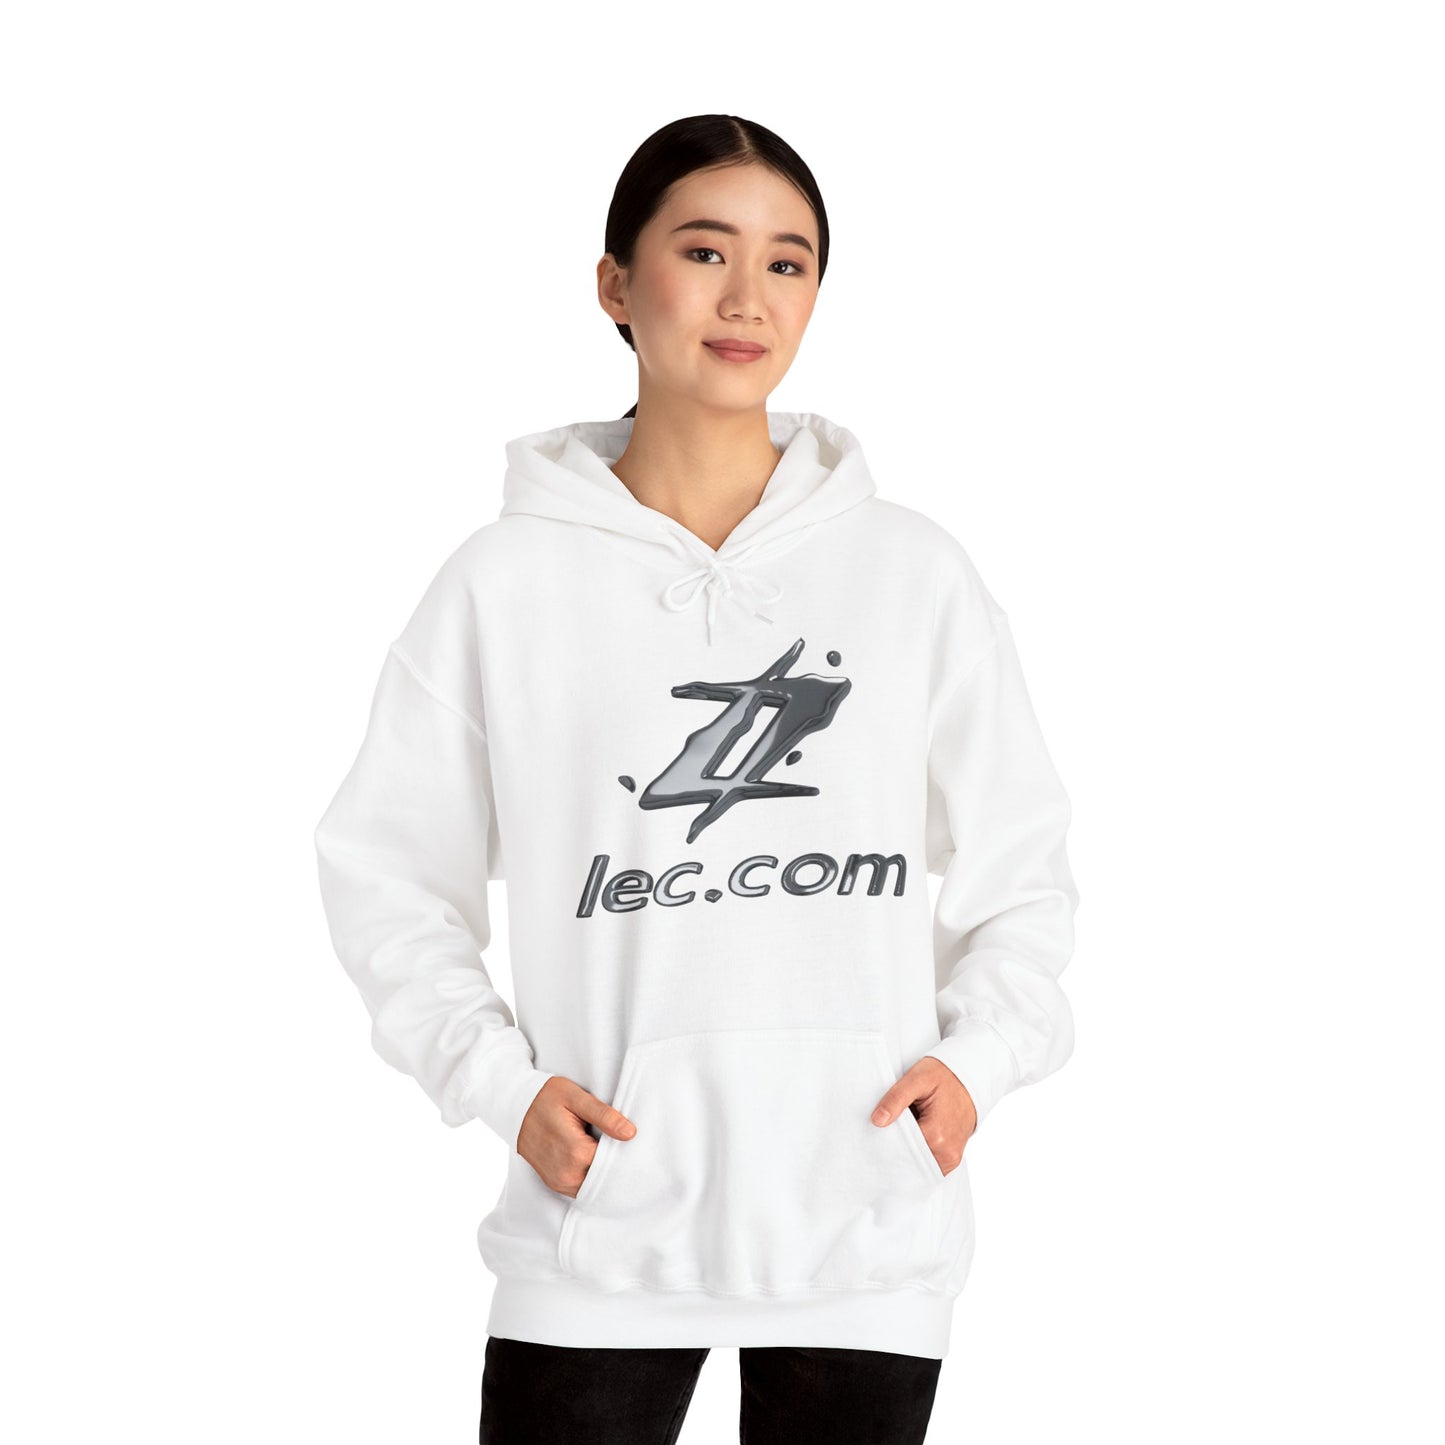 Lectron hoodie - regular fit